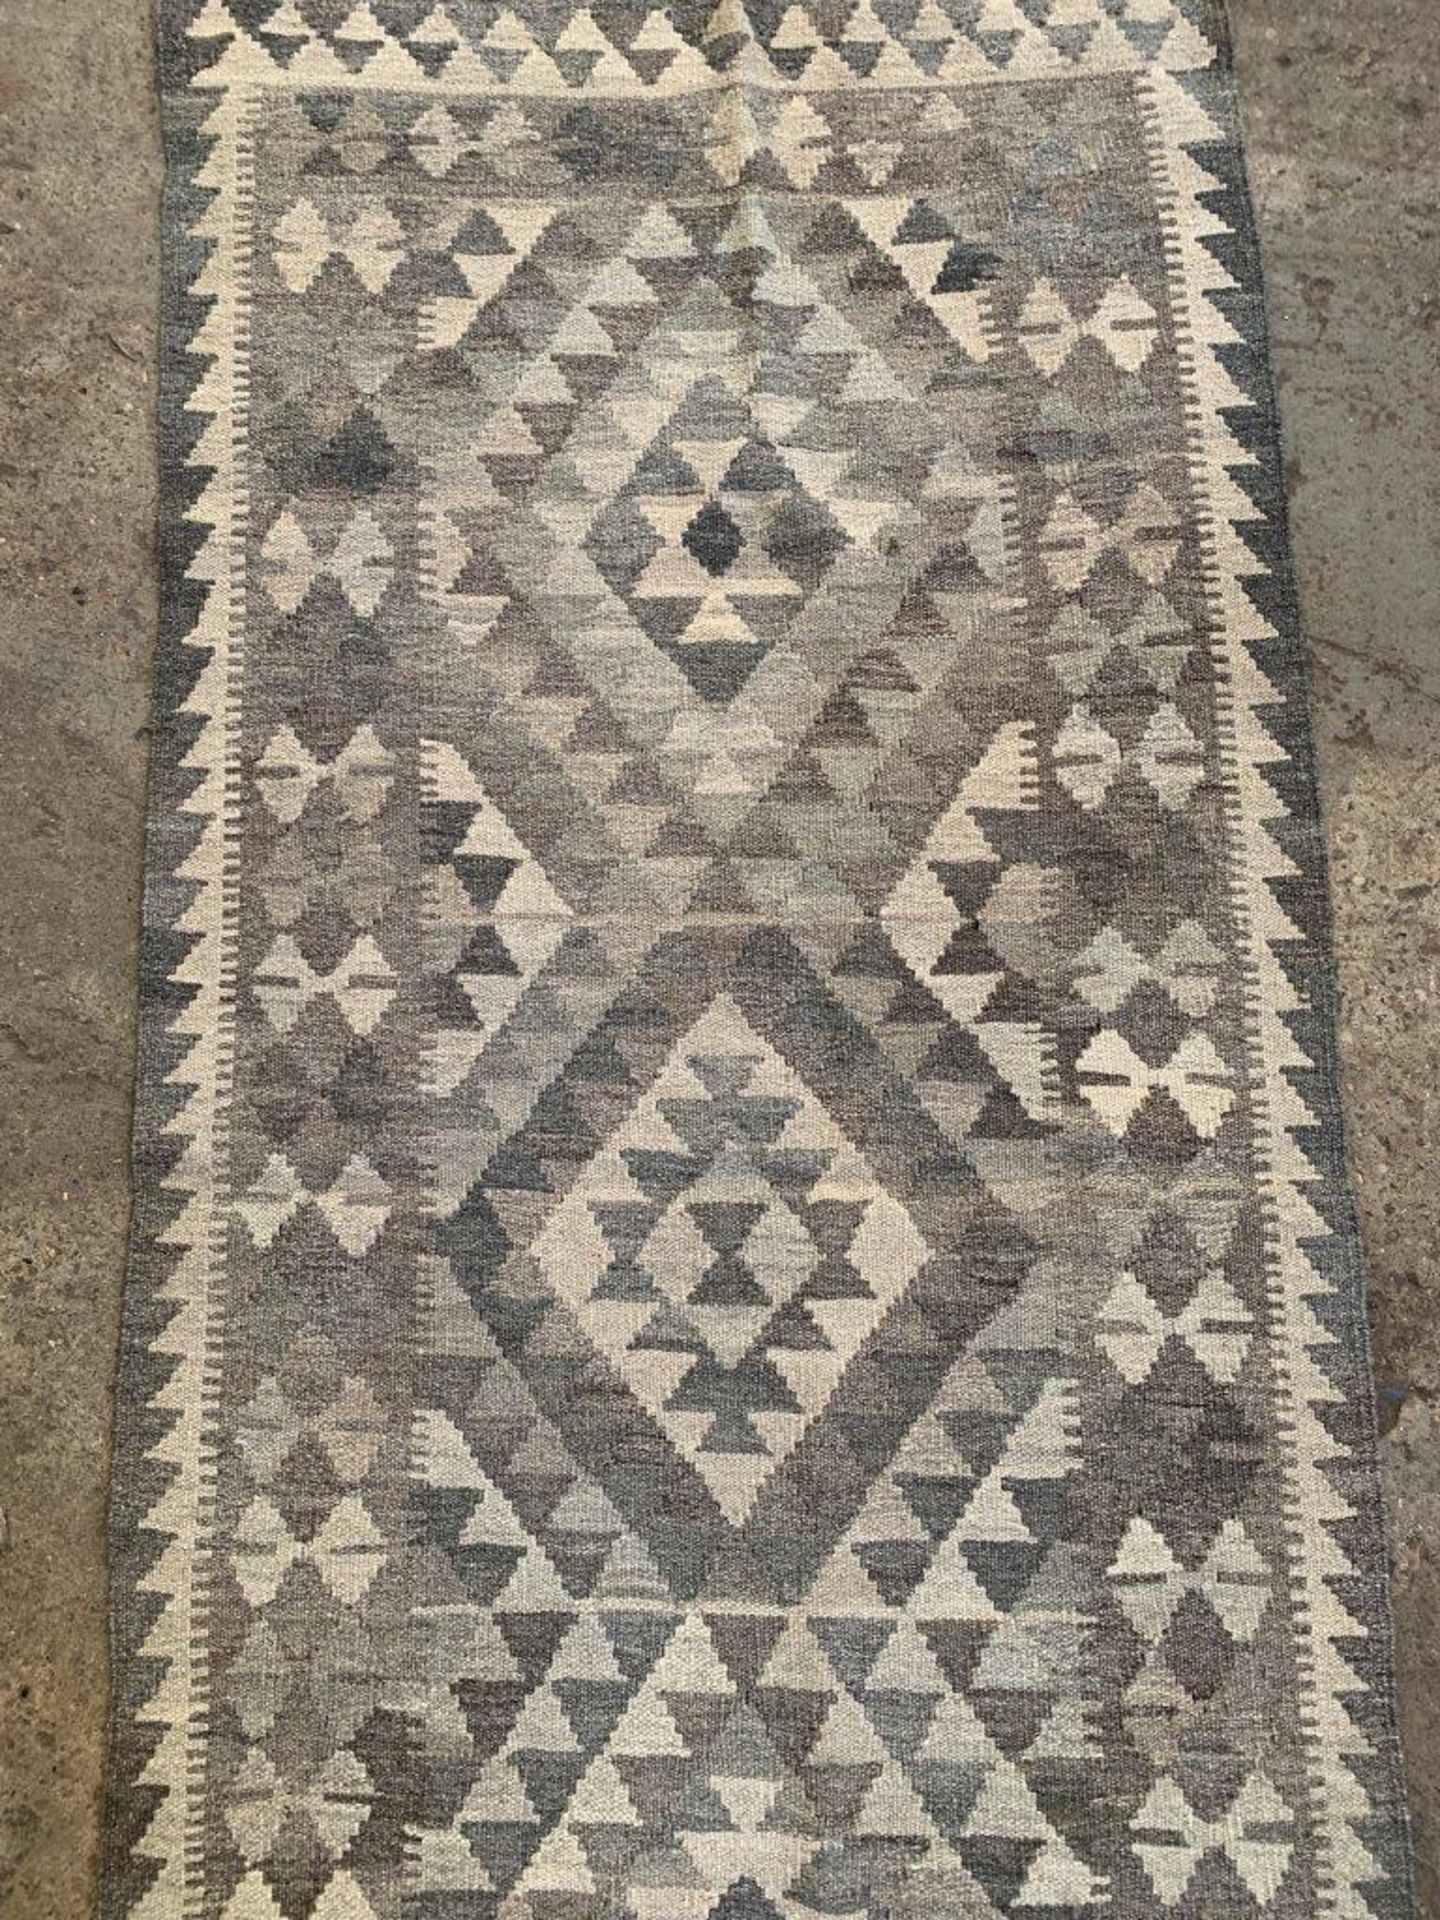 Two grey rugs - Bild 5 aus 6